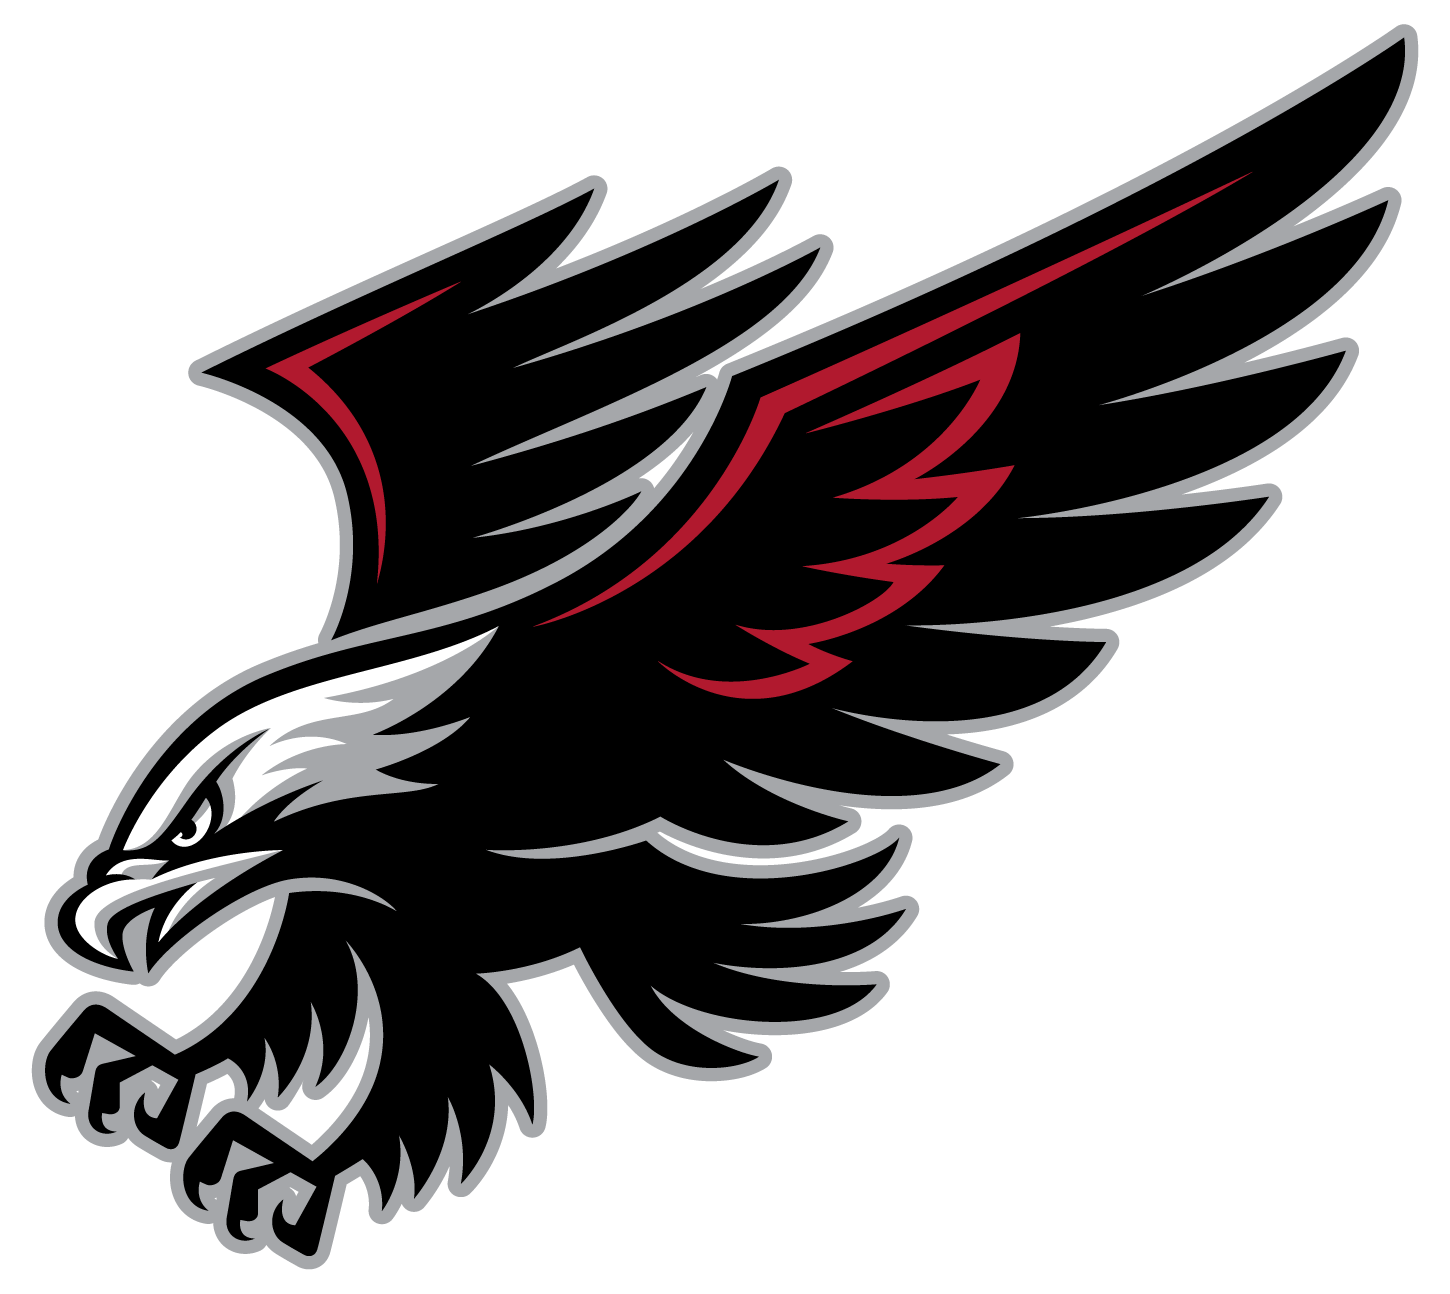 Falcon Bird Logo - Free Falcon Logo Cliparts, Download Free Clip Art, Free Clip Art on ...